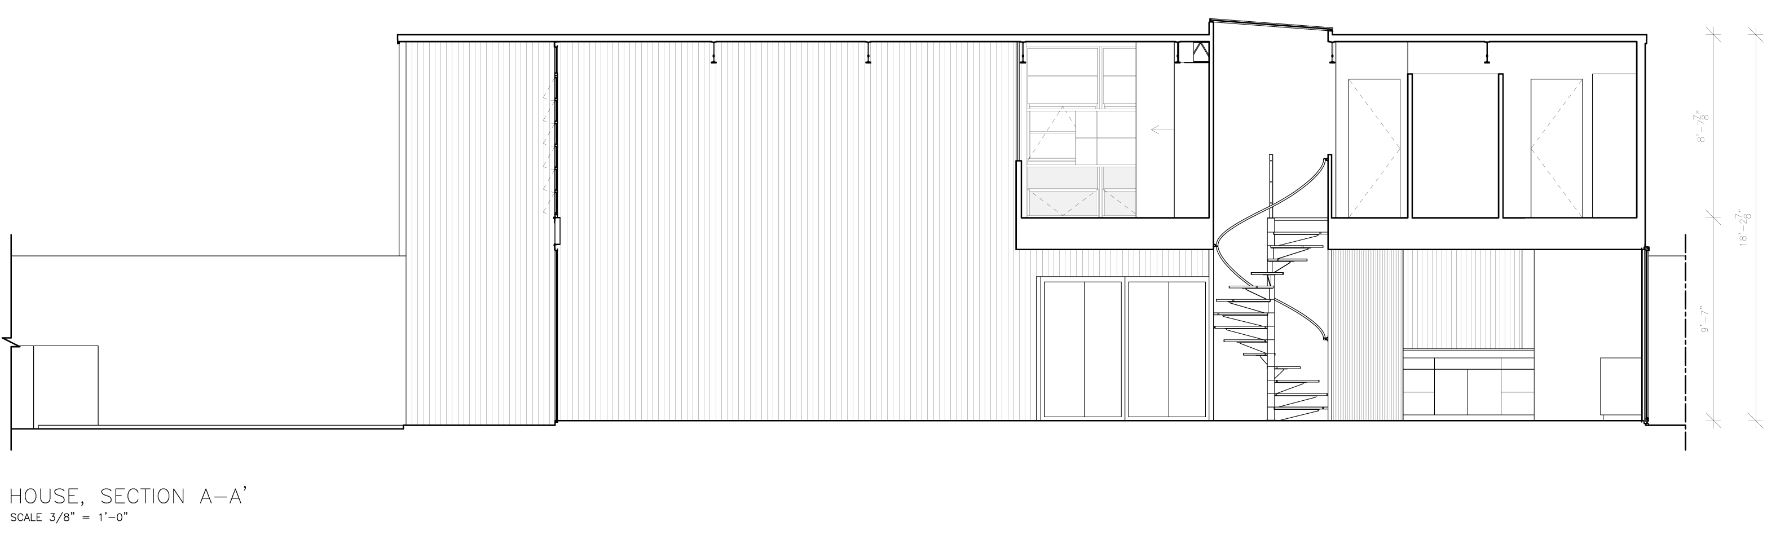 Esta imagen muestra Casa Eames, Casa, Sección A-A' proporcionada por Eames House dibujo como construido, dominio público